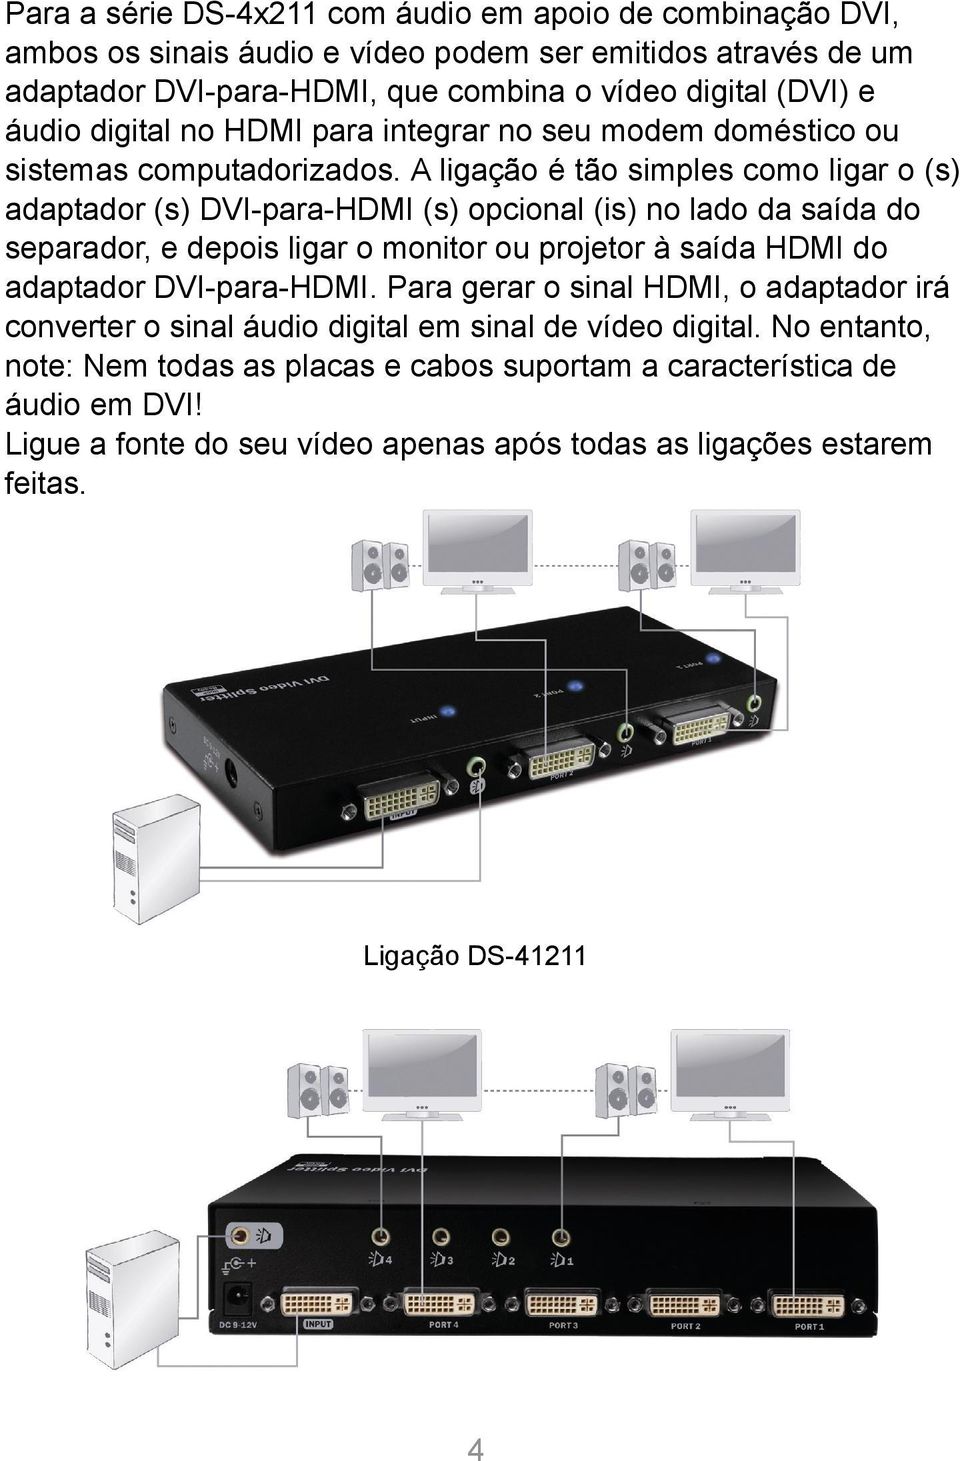 A ligação é tão simples como ligar o (s) adaptador (s) DVI-para-HDMI (s) opcional (is) no lado da saída do separador, e depois ligar o monitor ou projetor à saída HDMI do adaptador